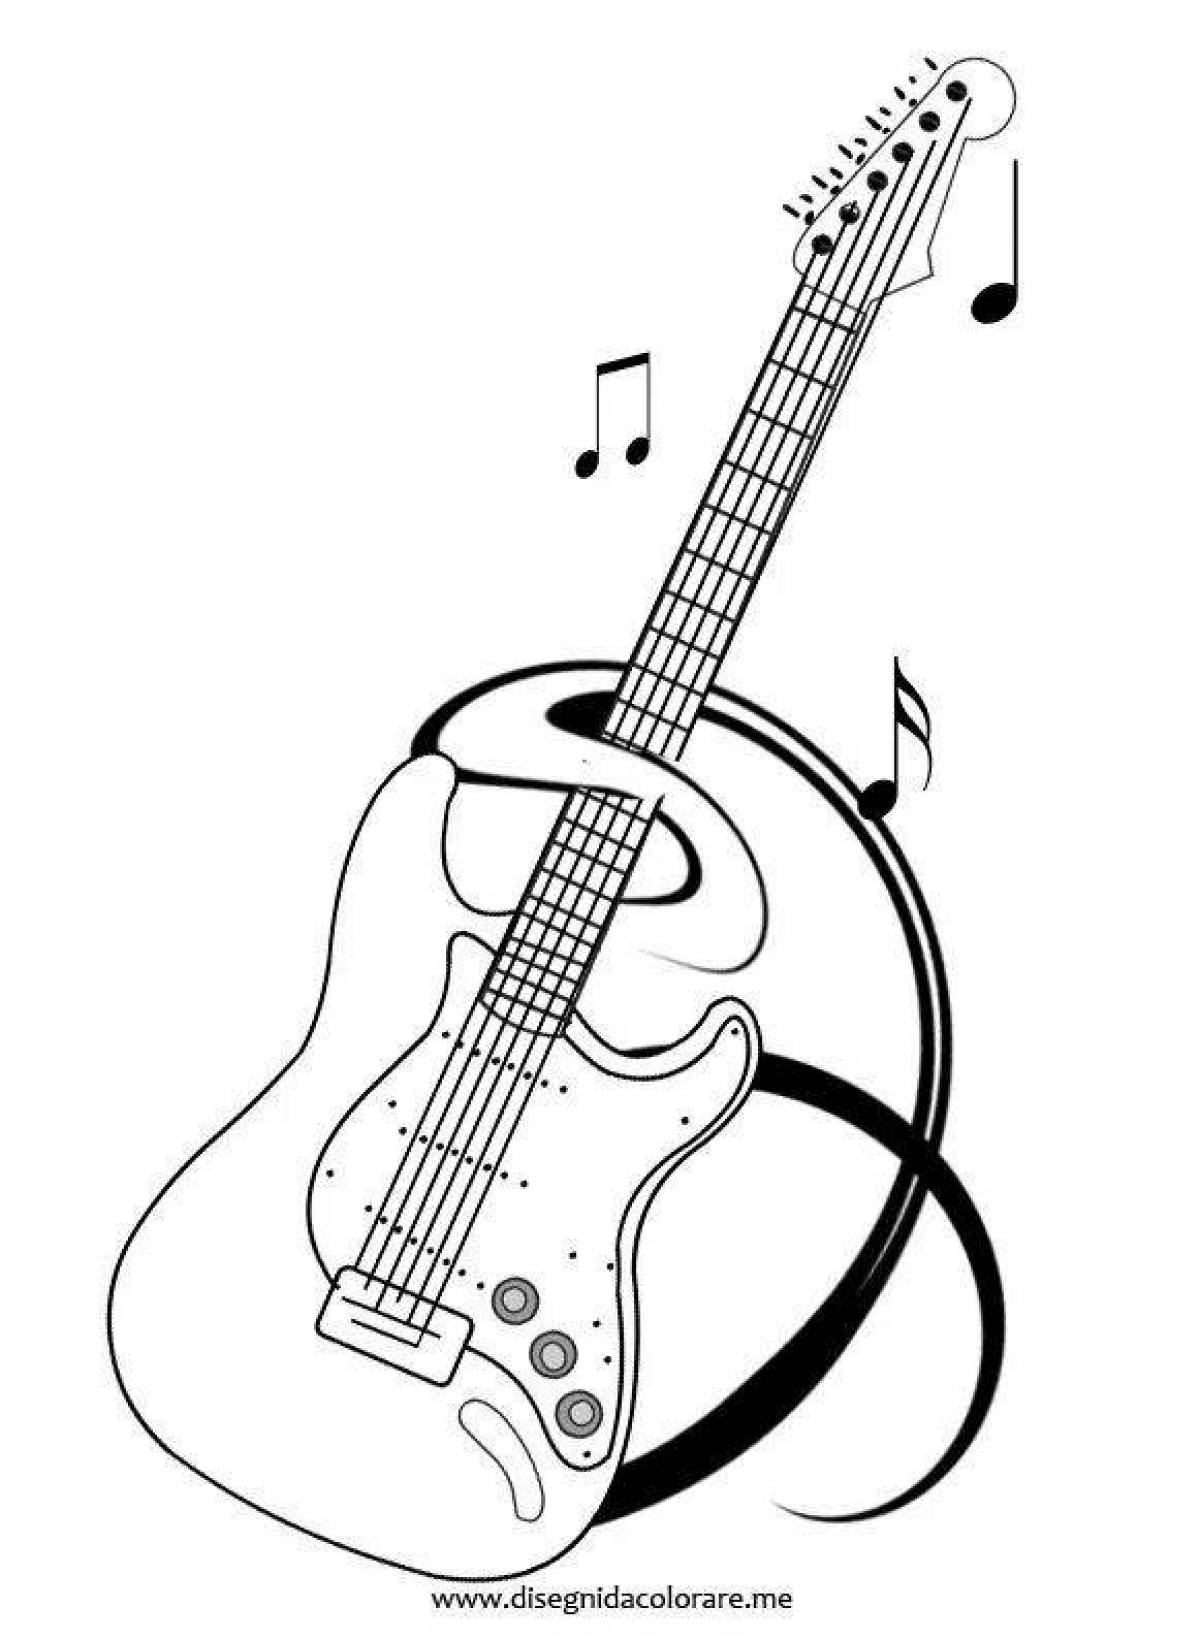 Радостная раскраска гитары для детей